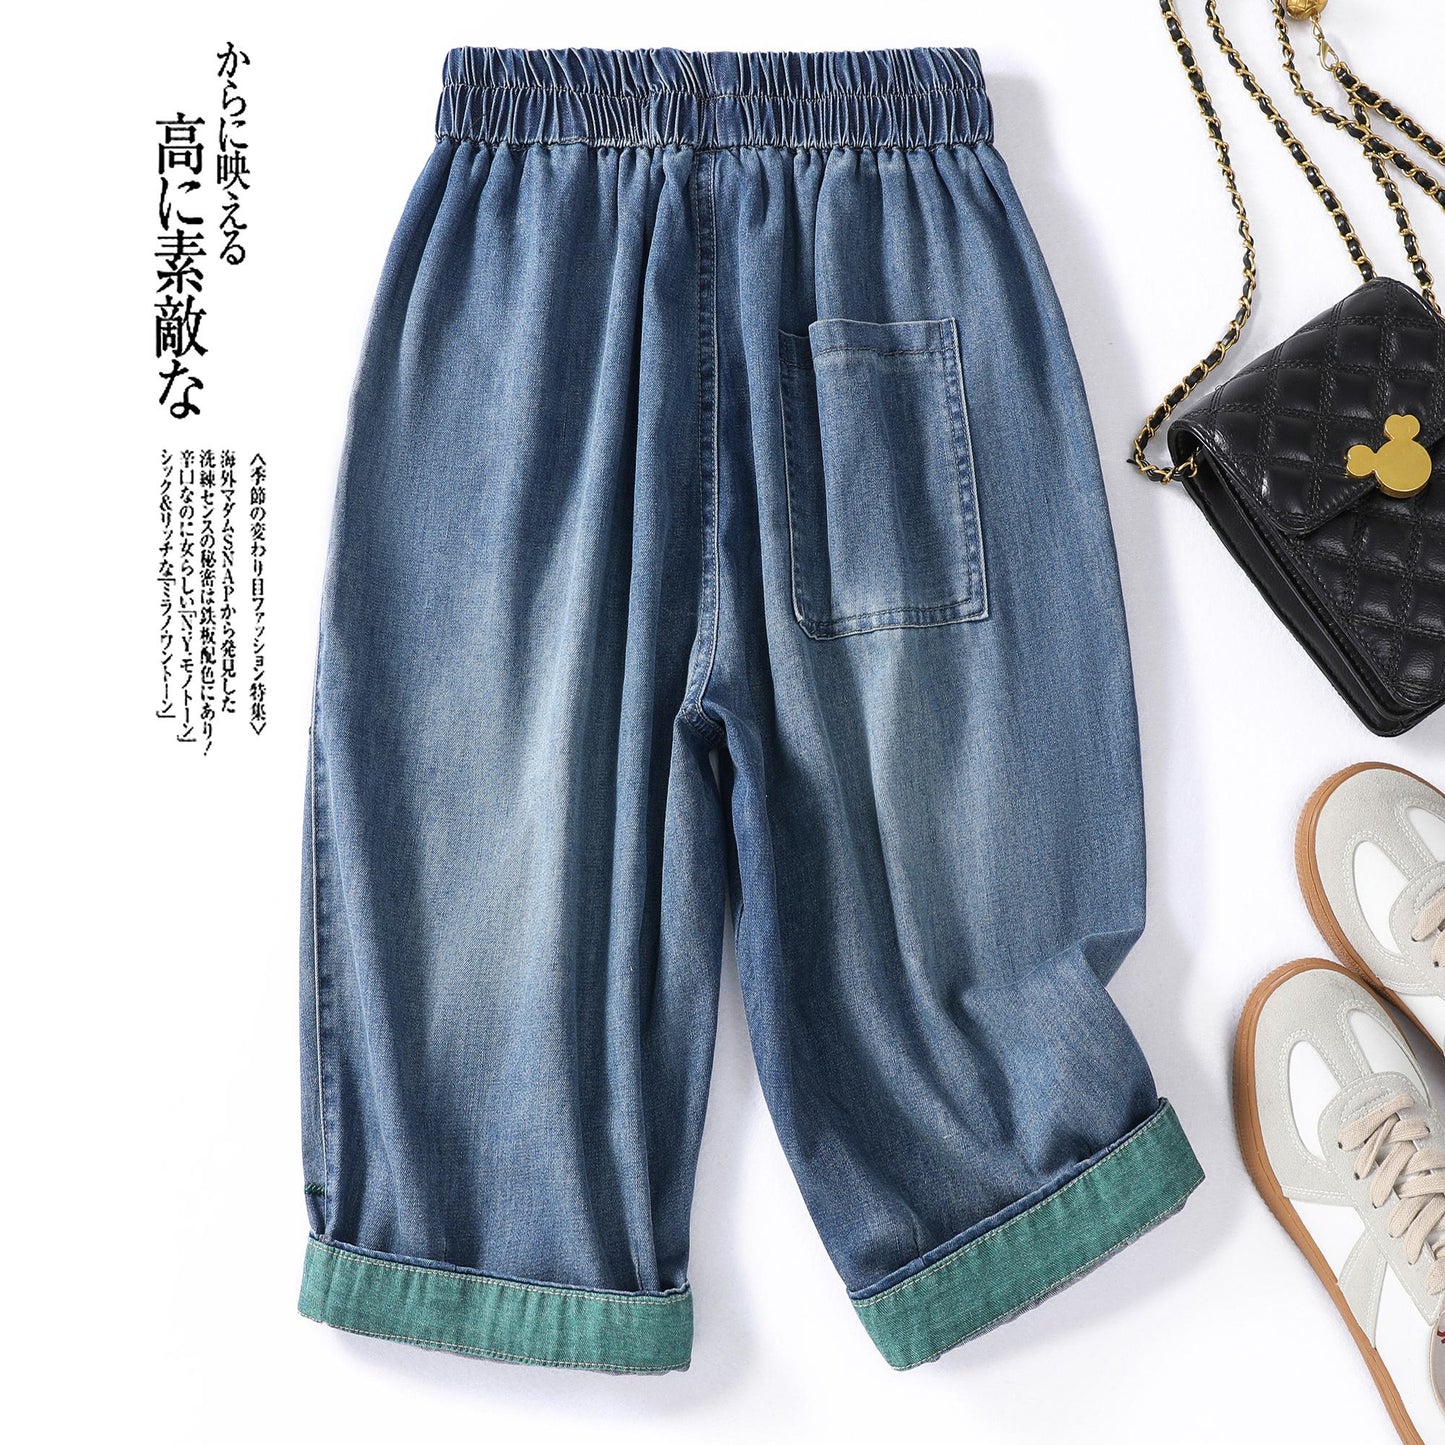 Lockere, schmale Jeans mit schlankmachender Stickerei